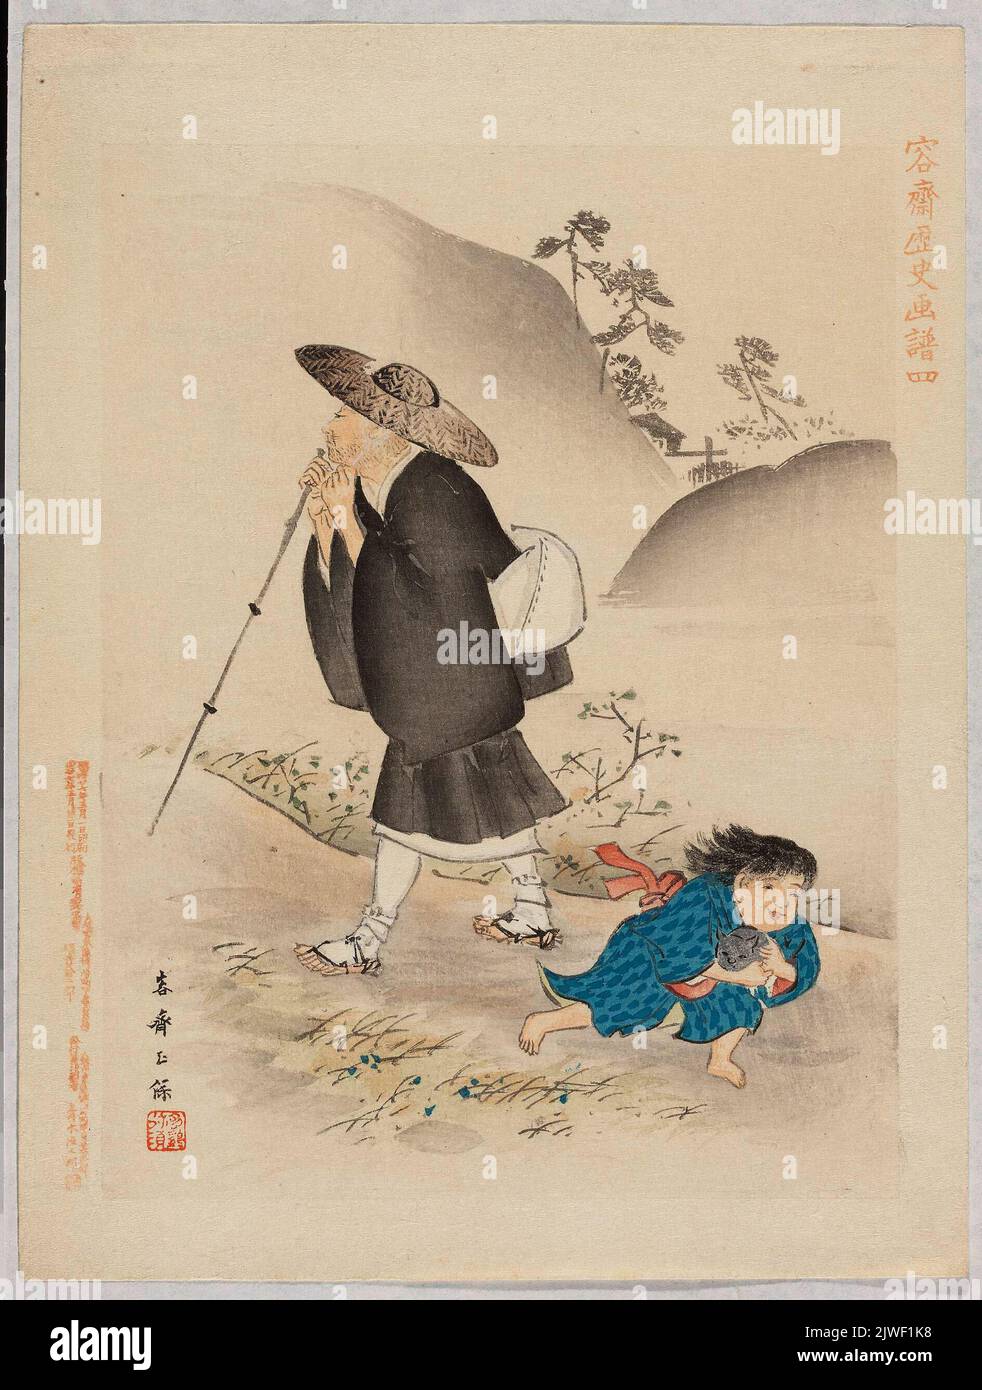 Carte de l'album intitulé “Yôsai rekishi gafu” (dessins historiques de Yosai), Ill. 4. Kikuchi, Yôsai (1788-1878), peintre Banque D'Images